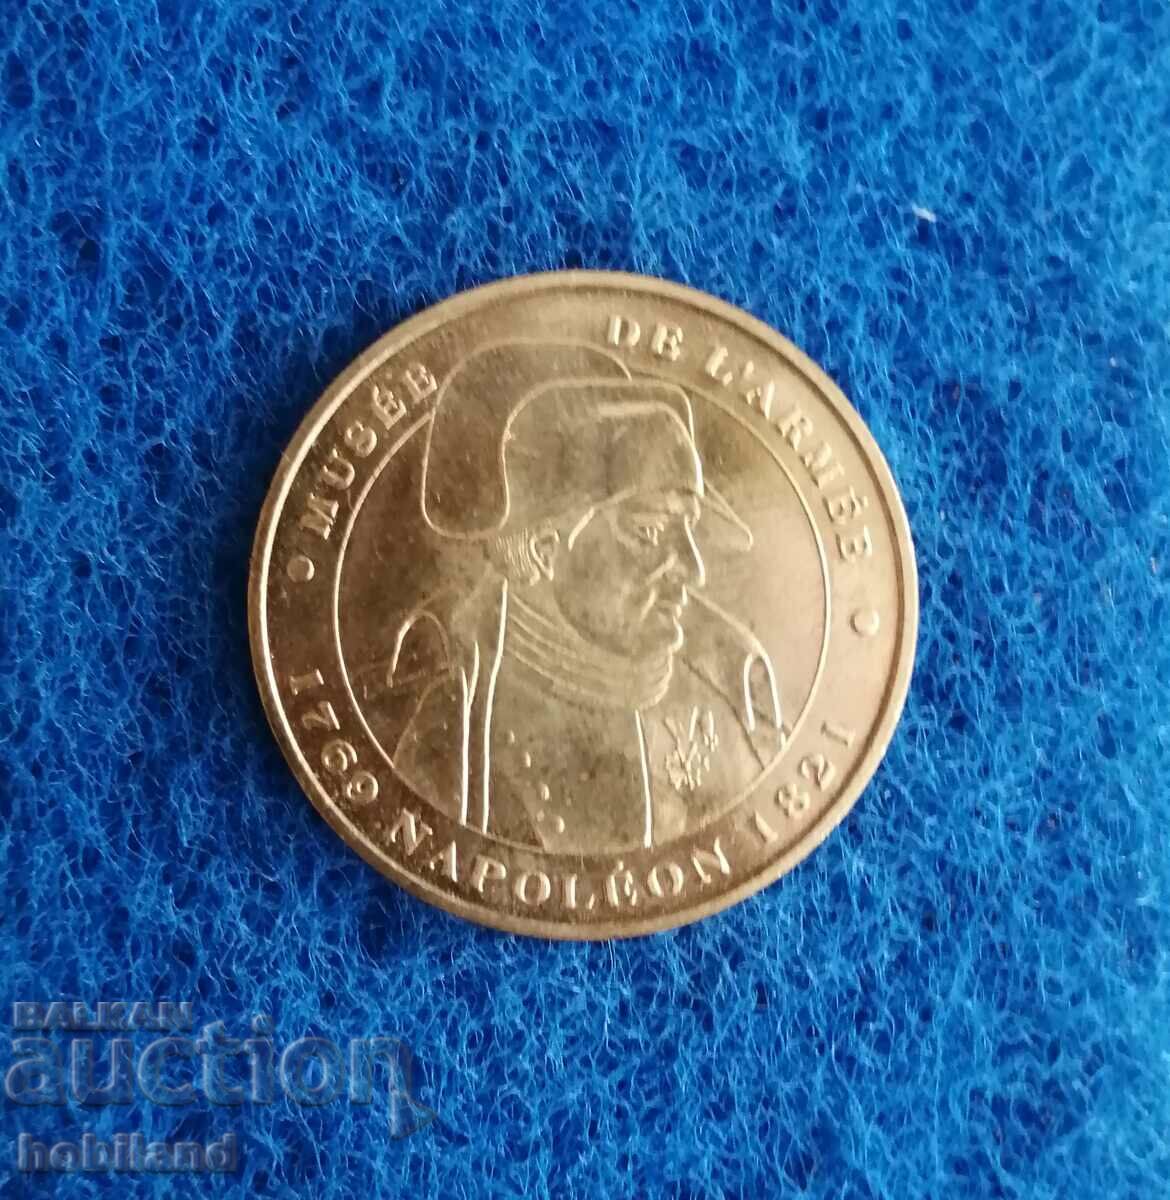 Collectible coin-France